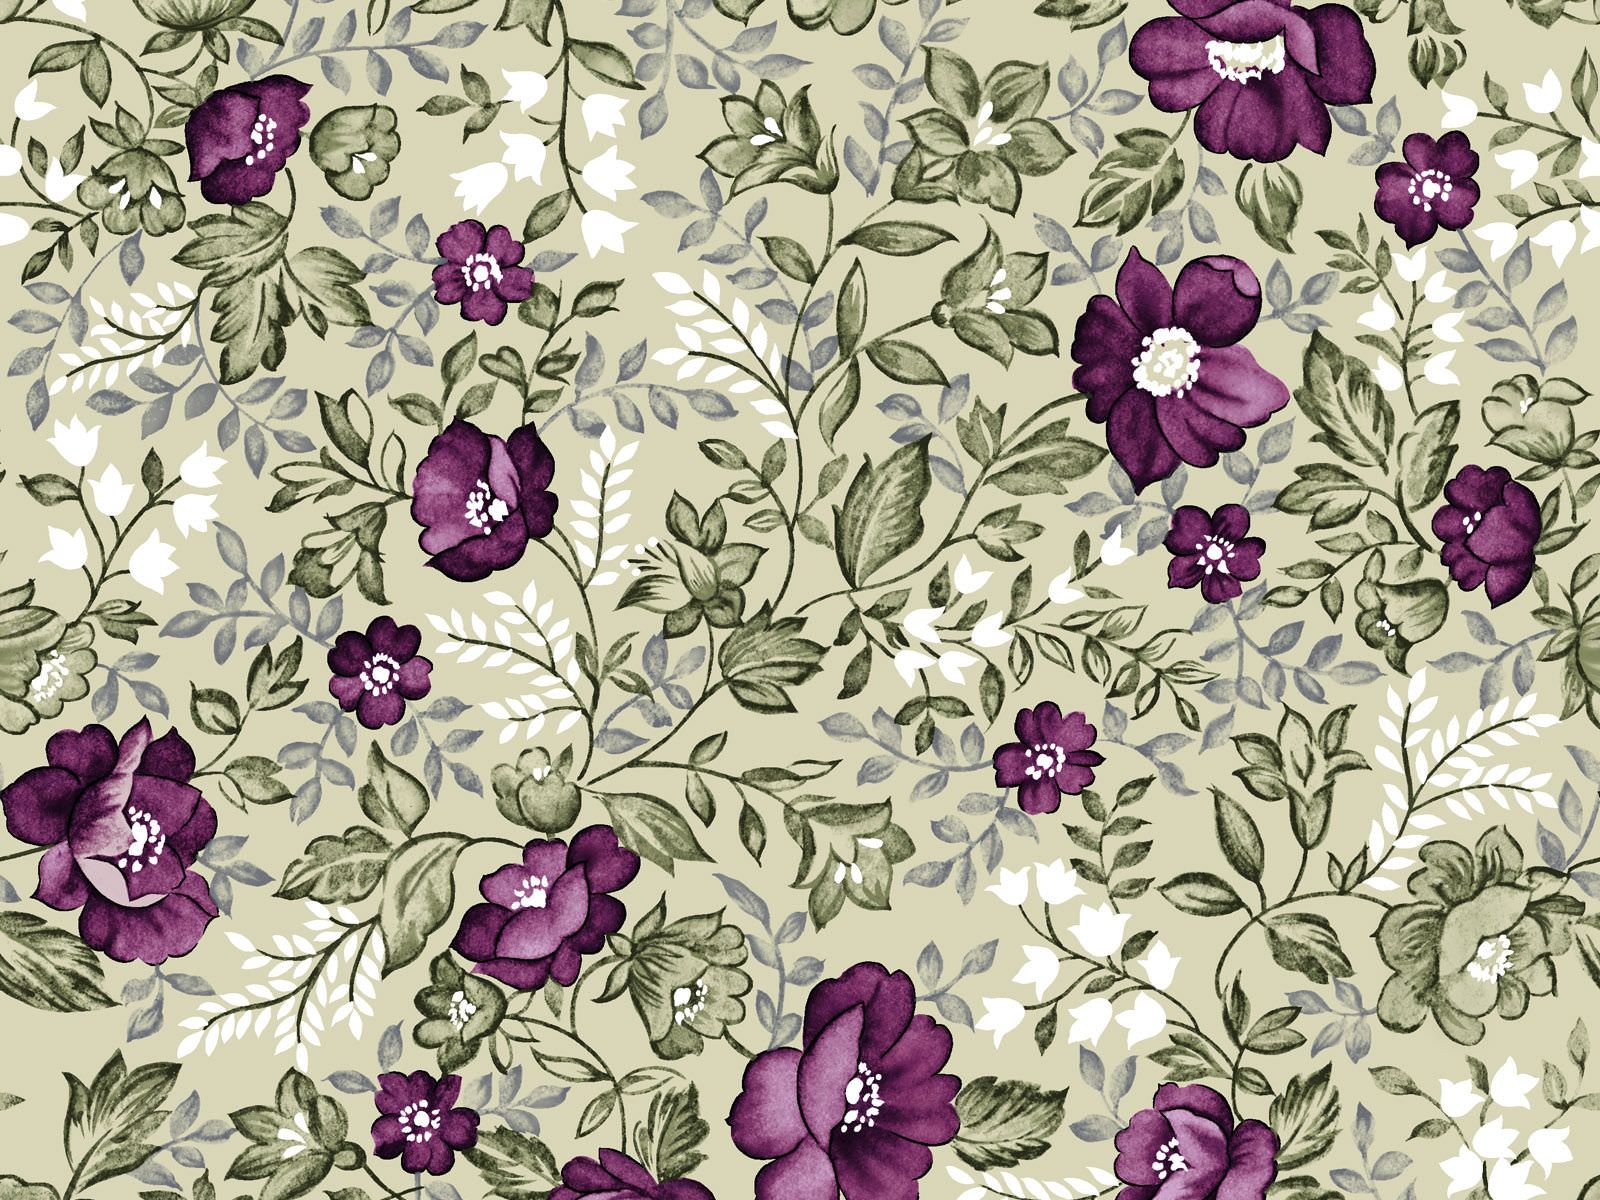 wallpaper tumblr vintage,purple,violet,pattern,flower,floral design